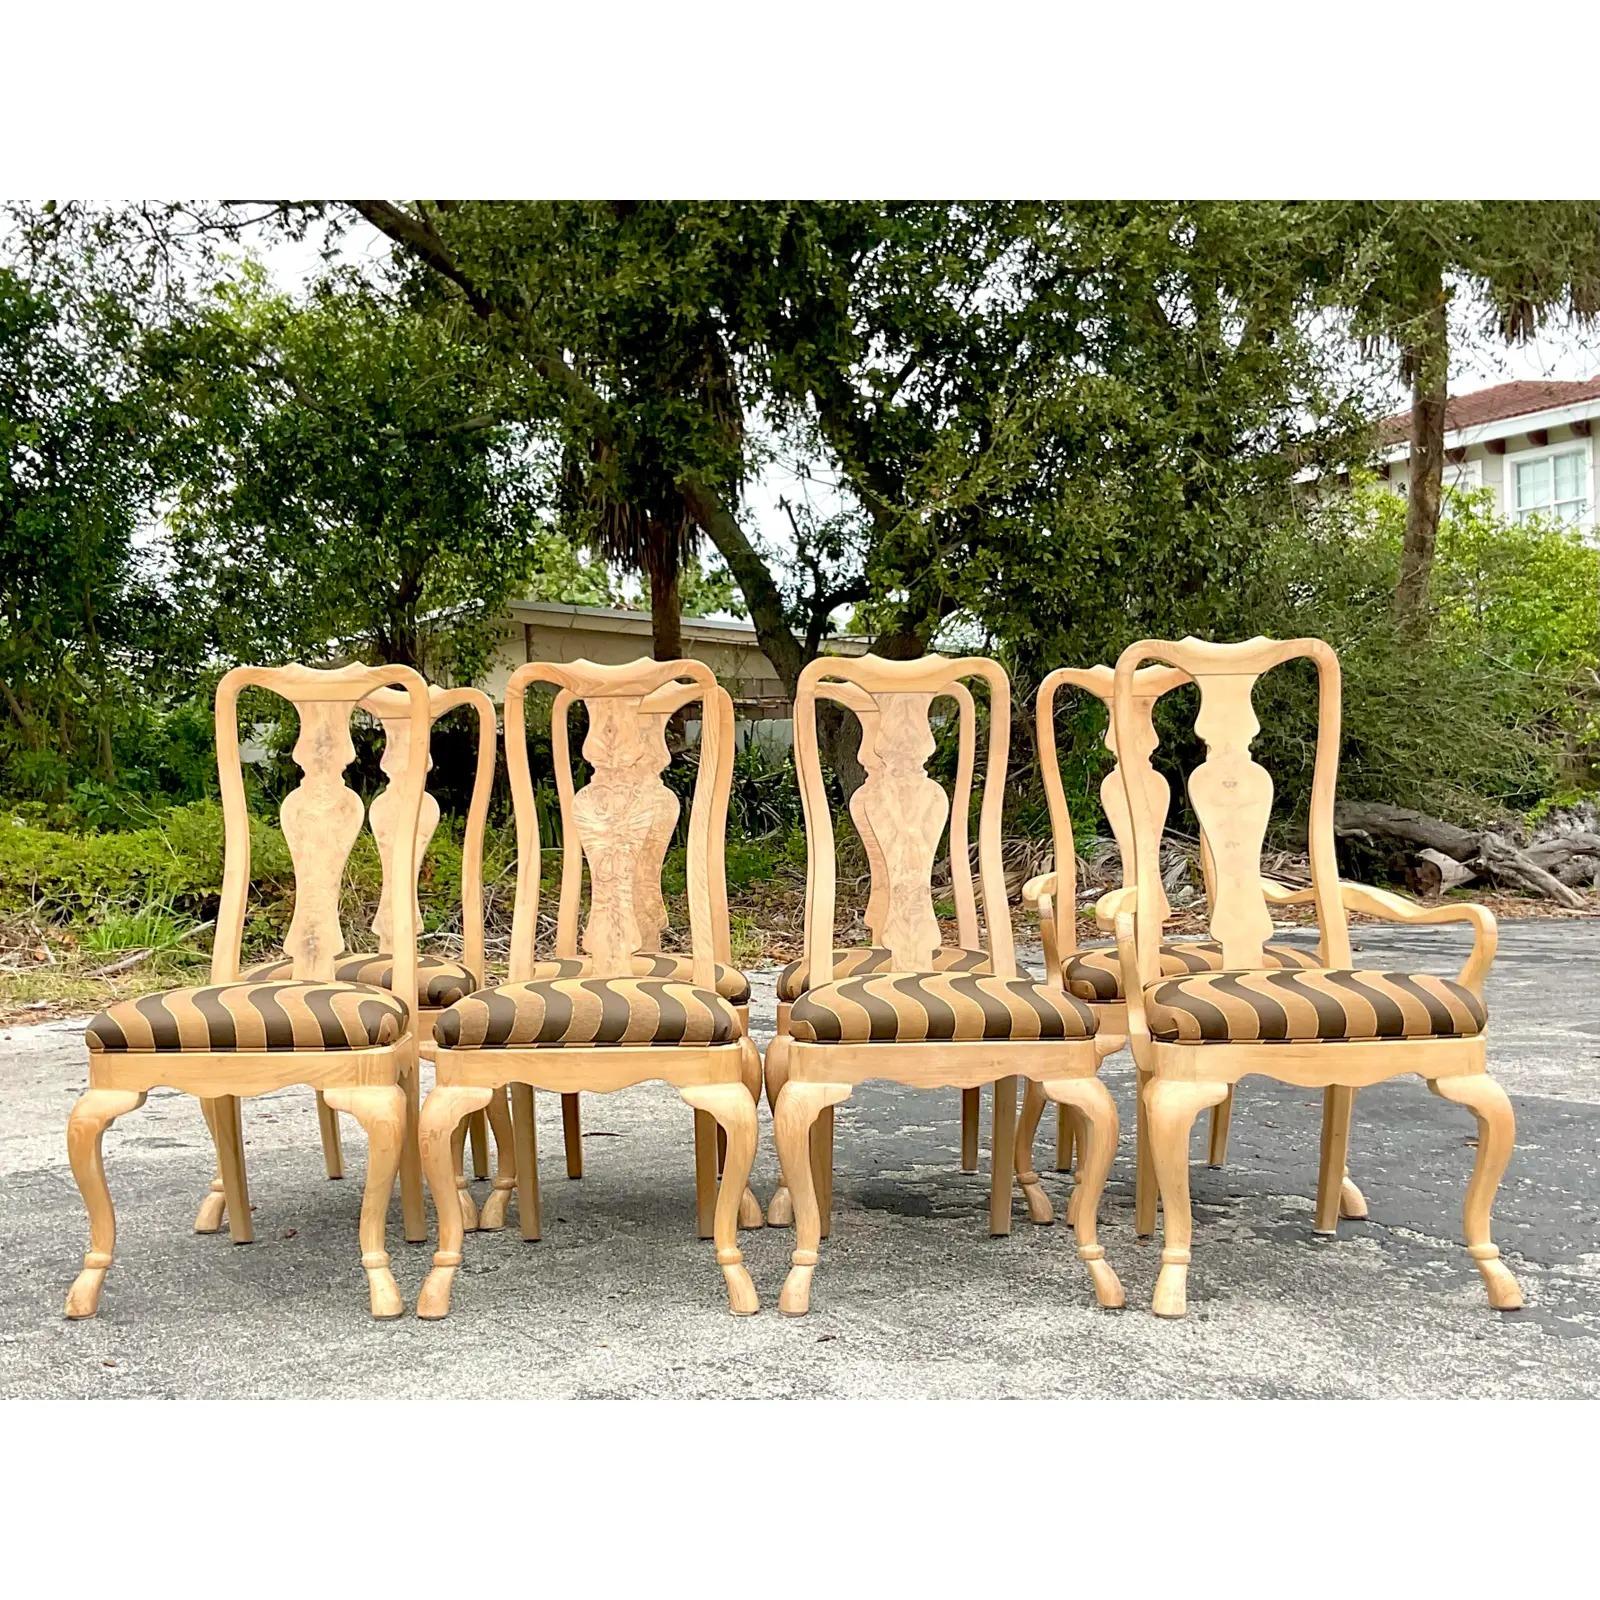 Un ensemble exceptionnel de 8 chaises de salle à manger Regency vintage. Dossiers hauts chics et pieds cabriolets sculptés. Magnifique grain de bois de ronce. Un jacquard ondulé avec une touche de lurex. Acquis d'une propriété de Palm